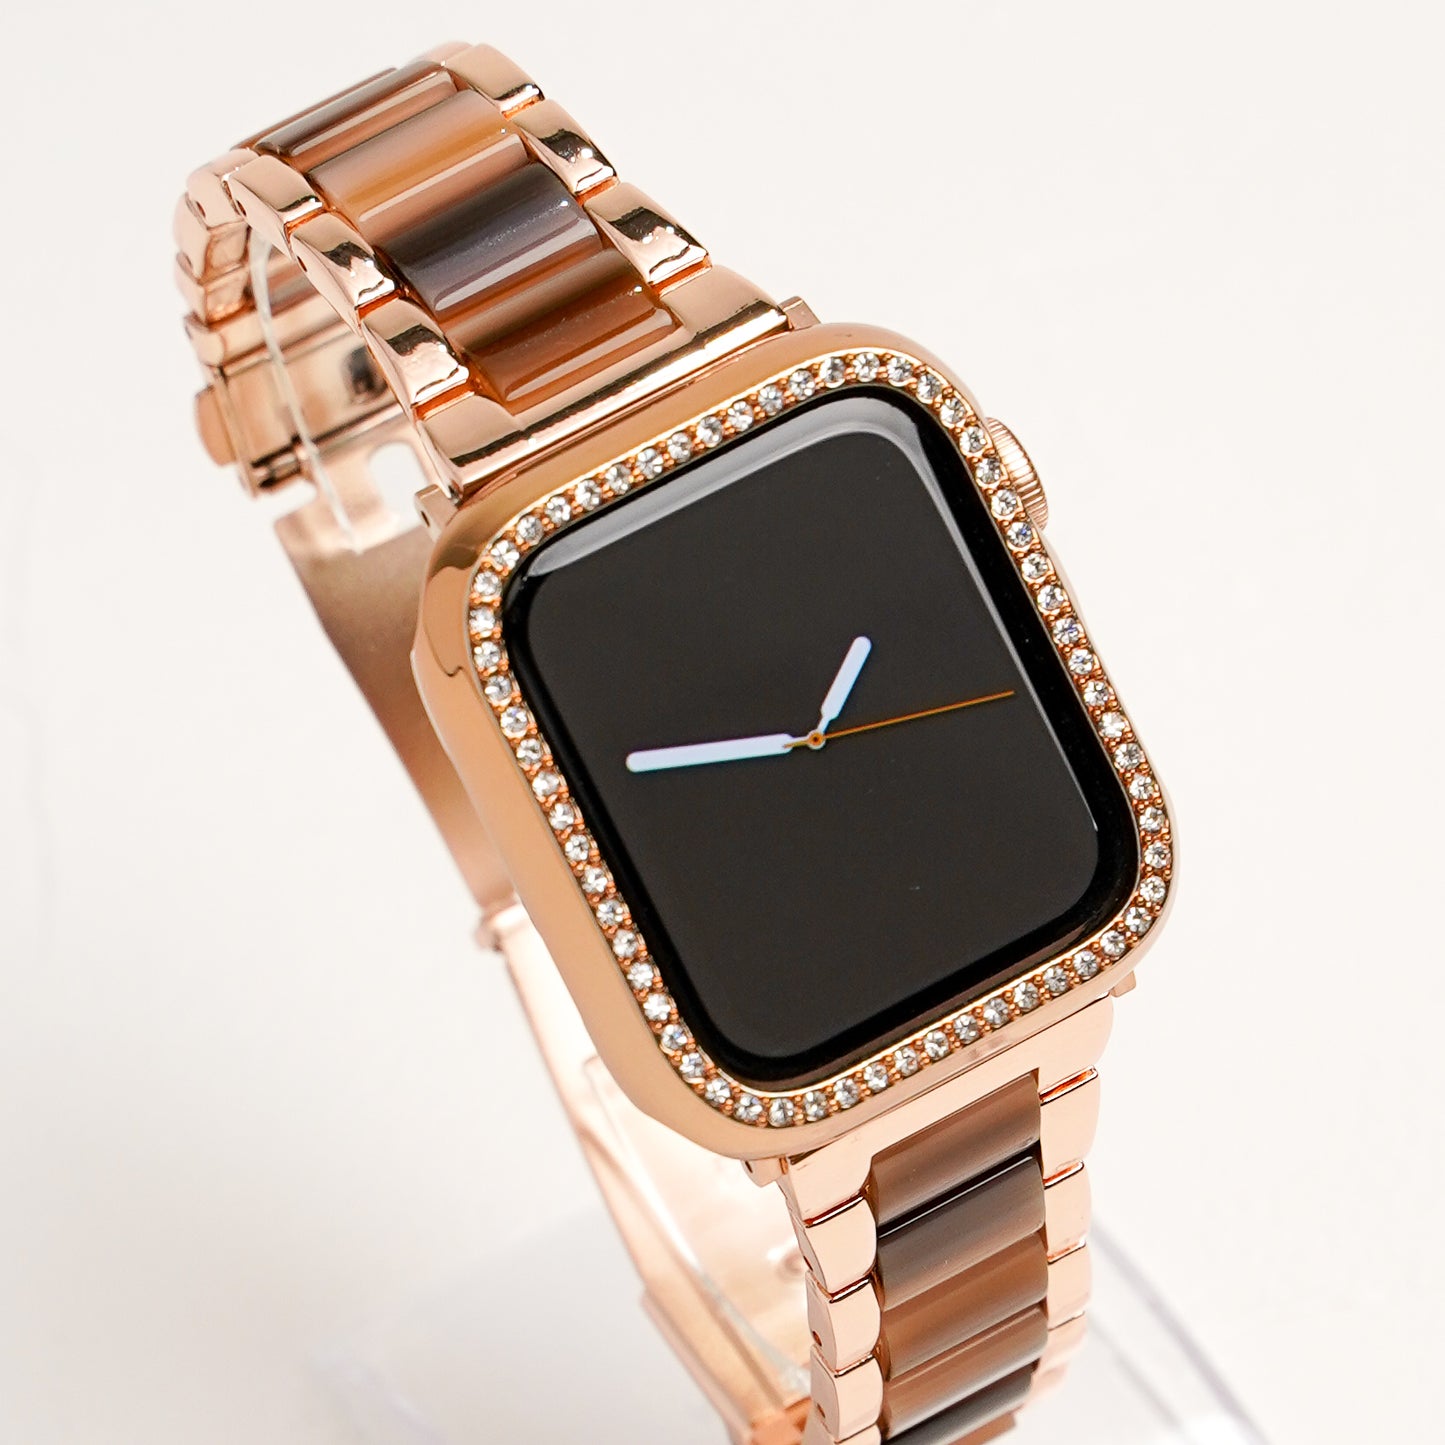 キラキラ ストーン1列 保護フレーム ハードタイプ アップルウォッチ カバー Apple watch